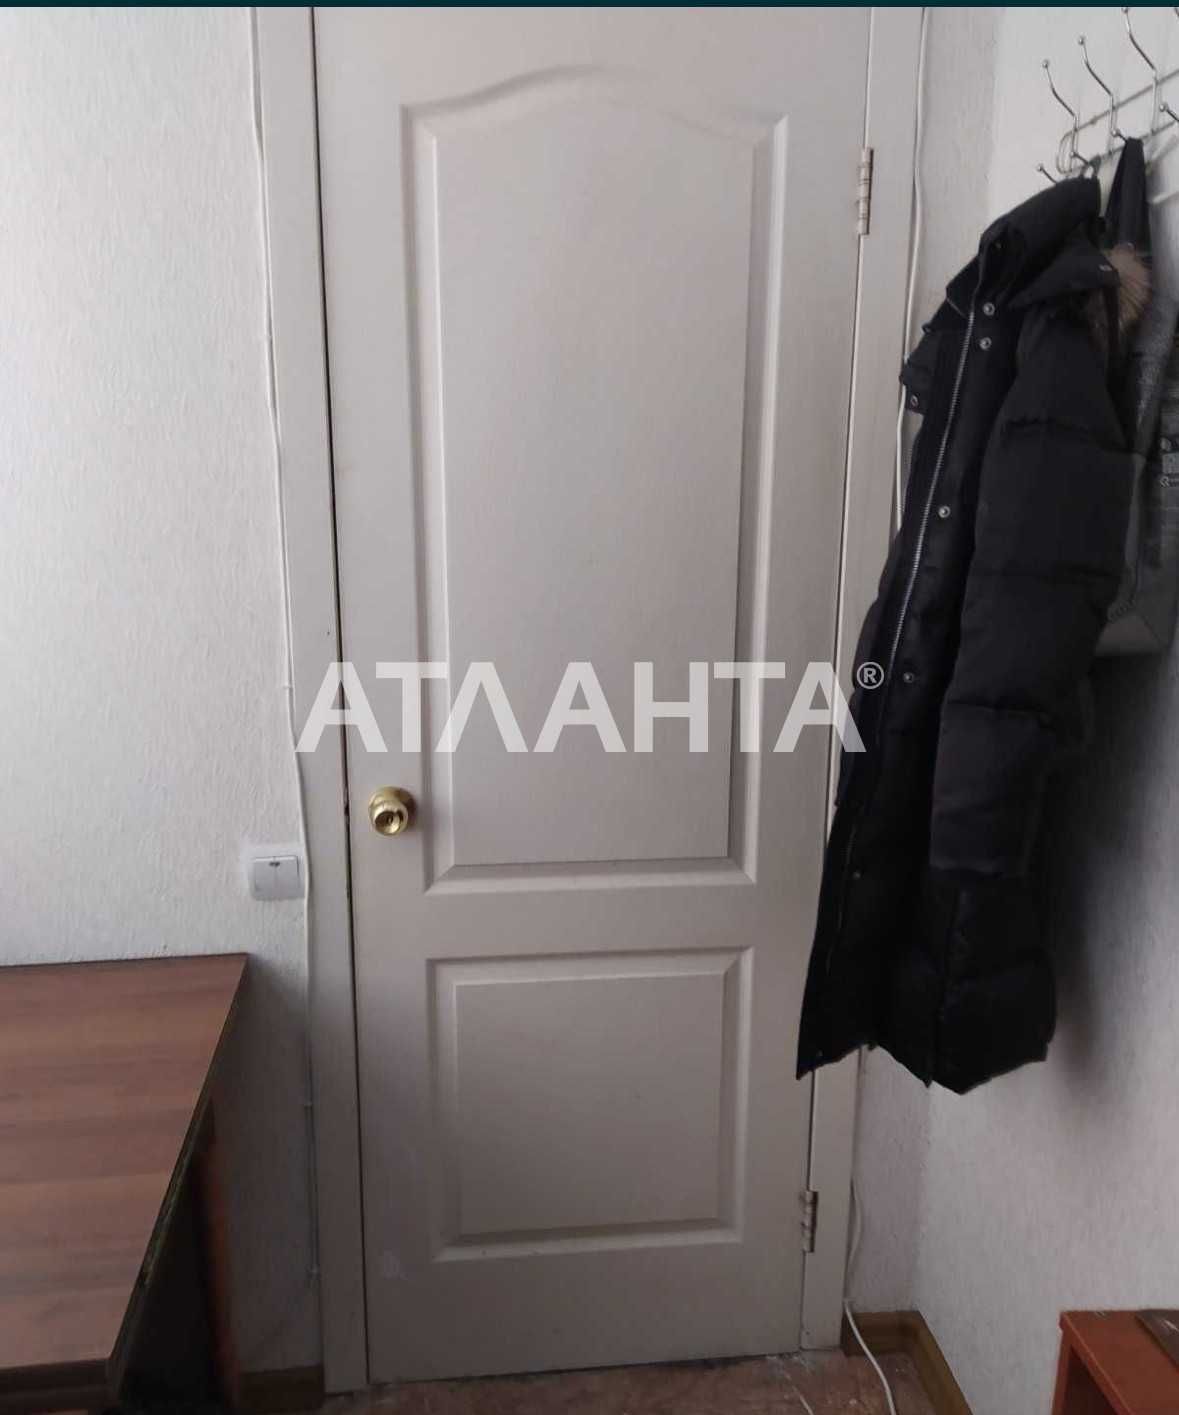 Предлагается к продаже комната  на среднем этаже  по улице Курская.